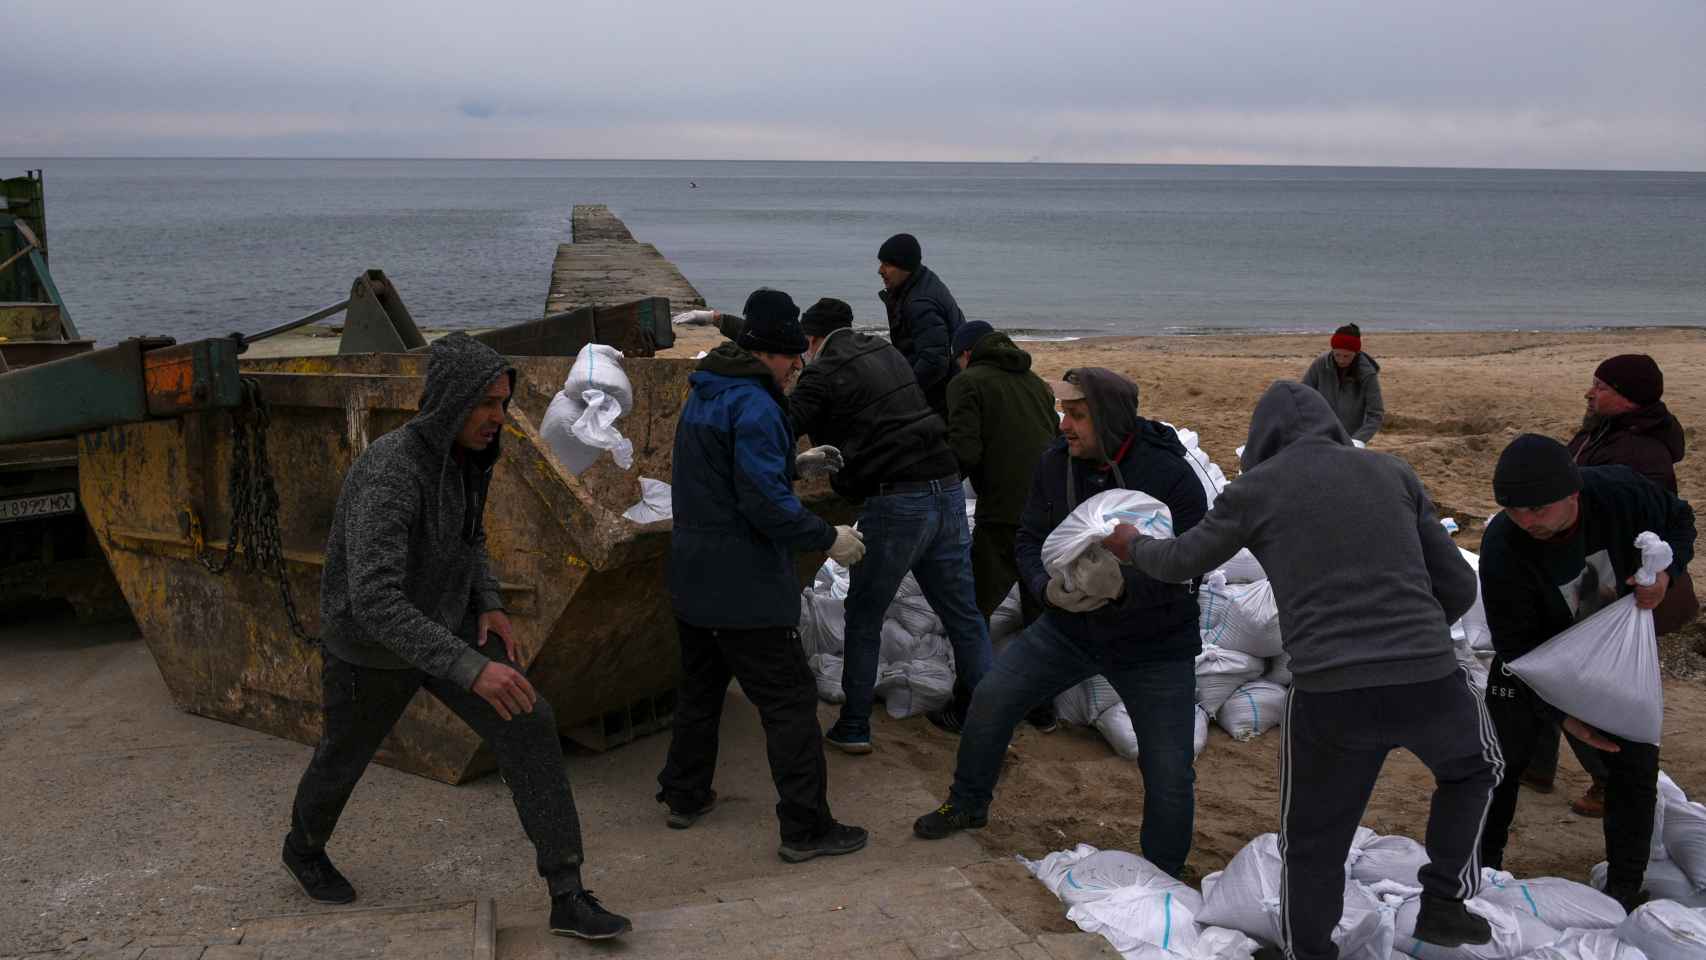 Voluntarios rellenan bolsas con arena de la playa de Odesa para levantar barricadas frente al Ejército ruso.